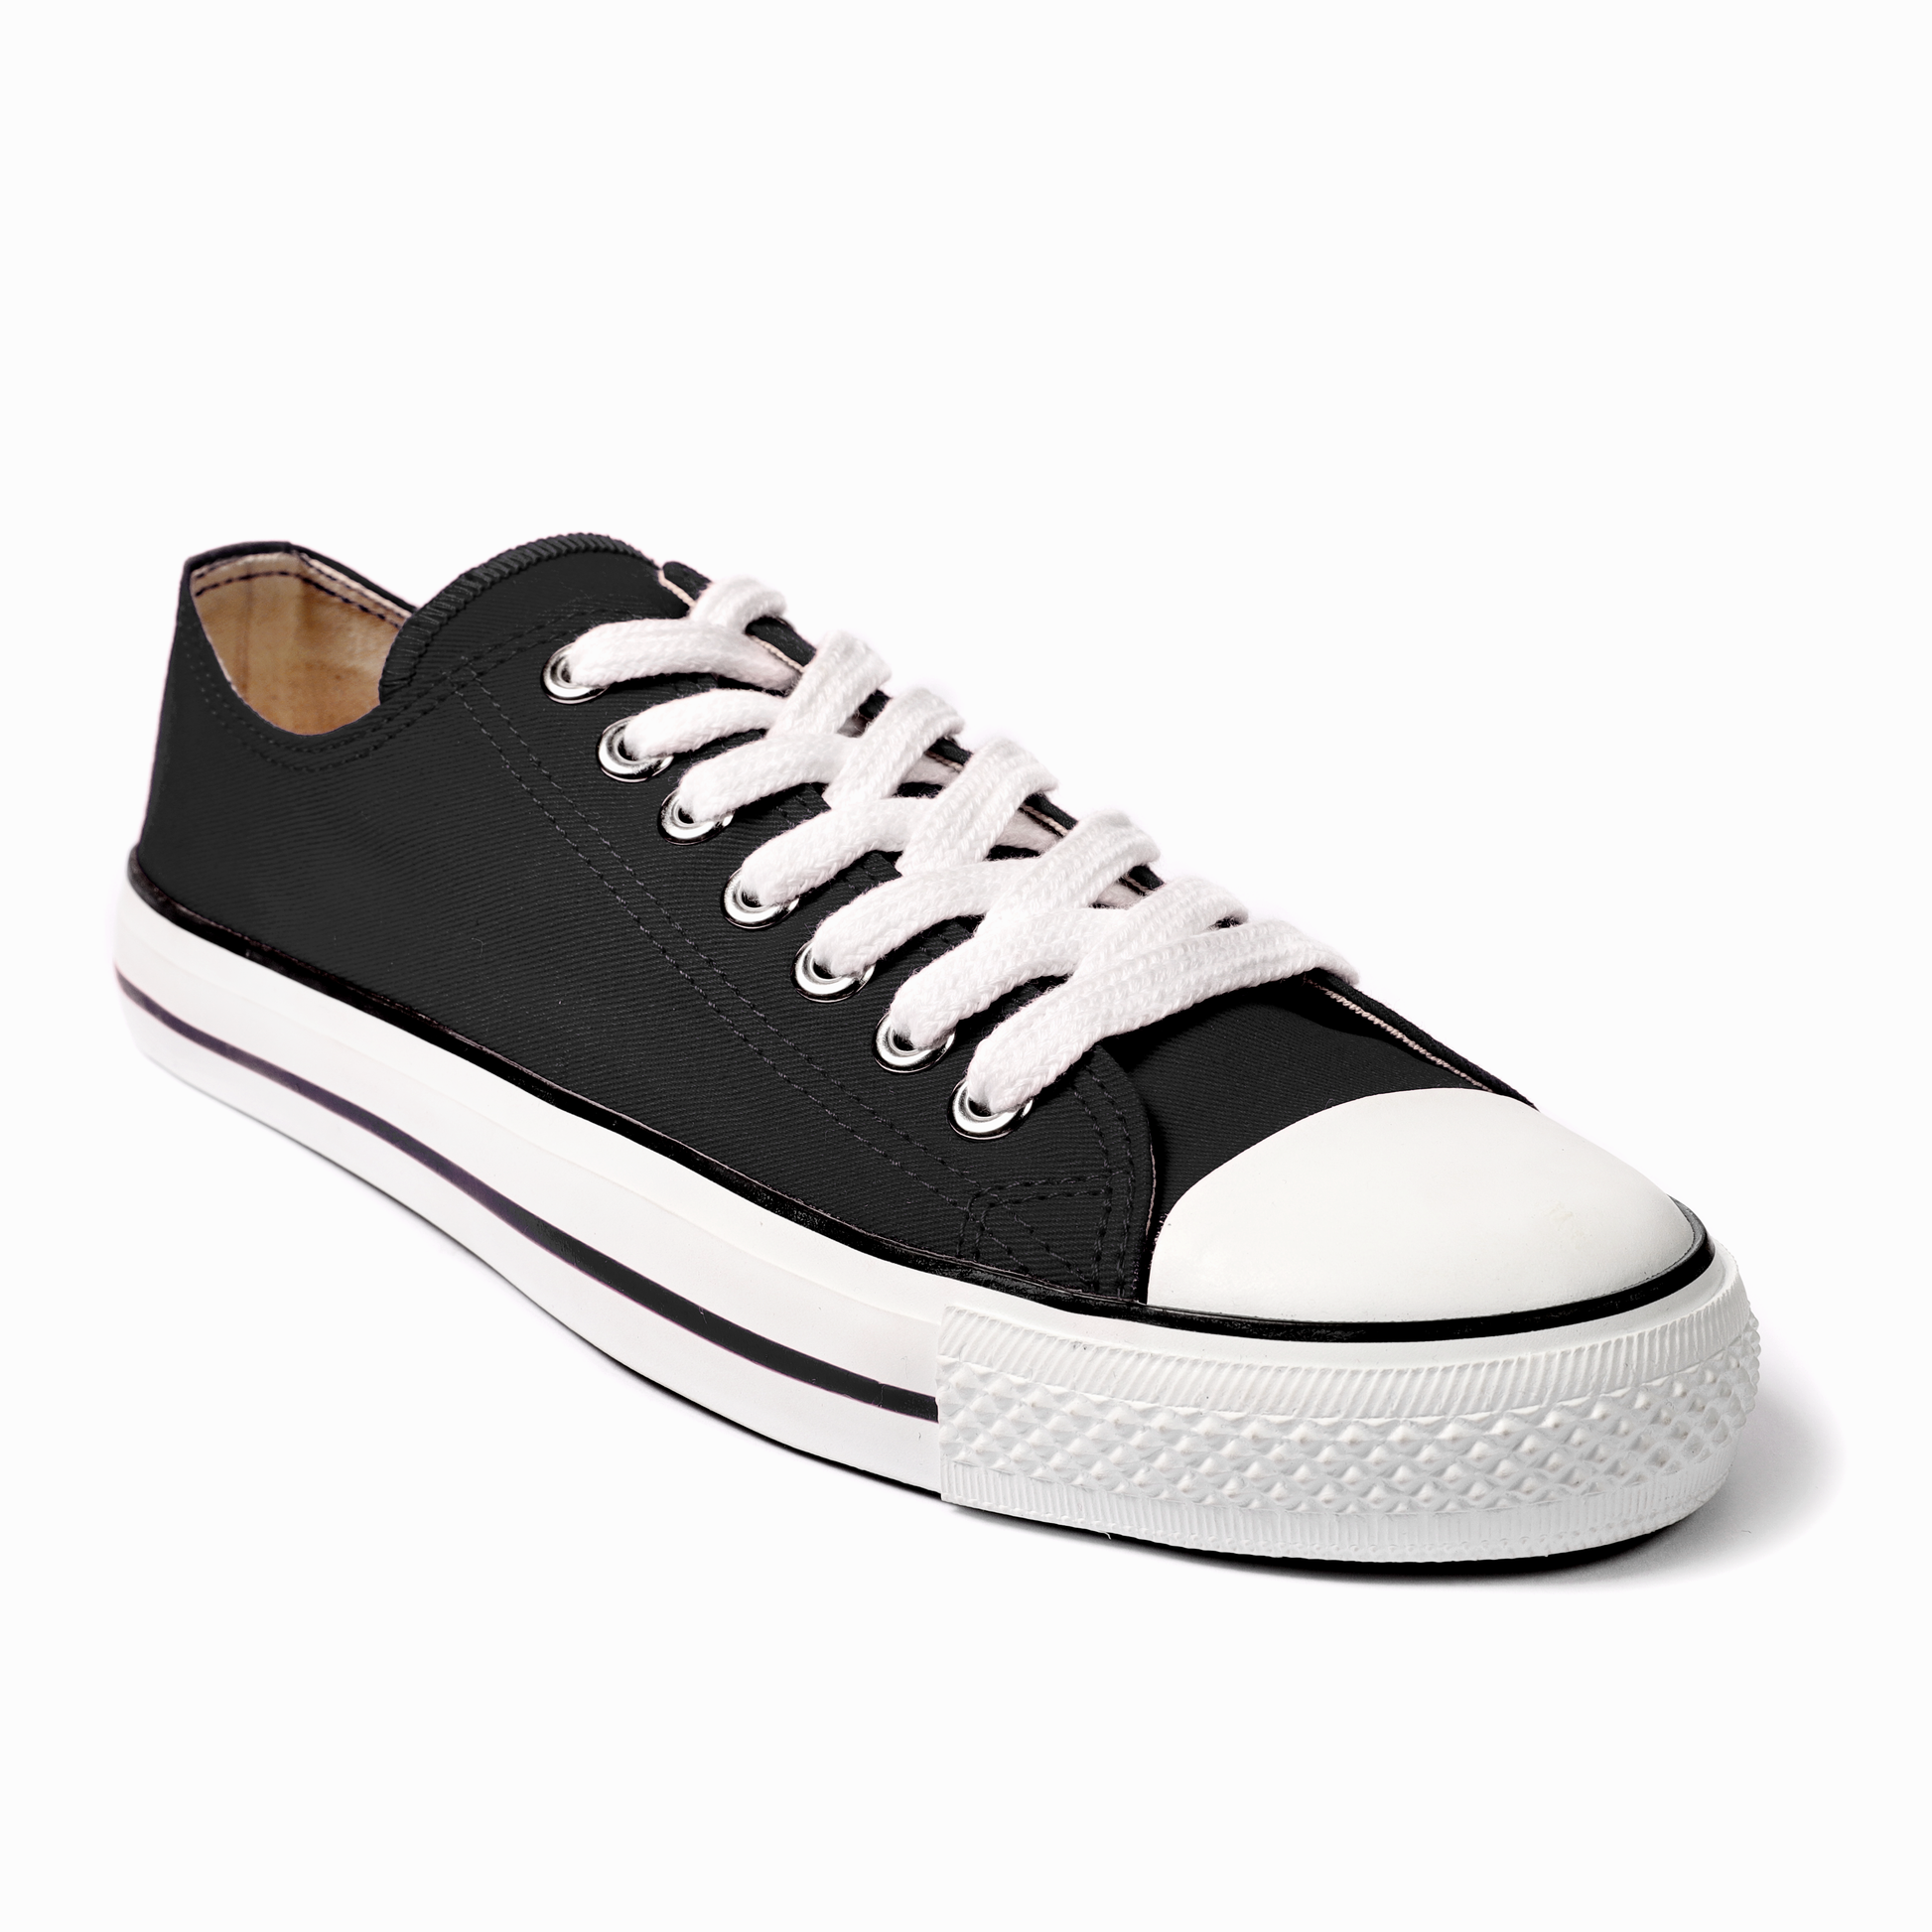 Shop Duvita's Black Classic Sneakers – duvita.co